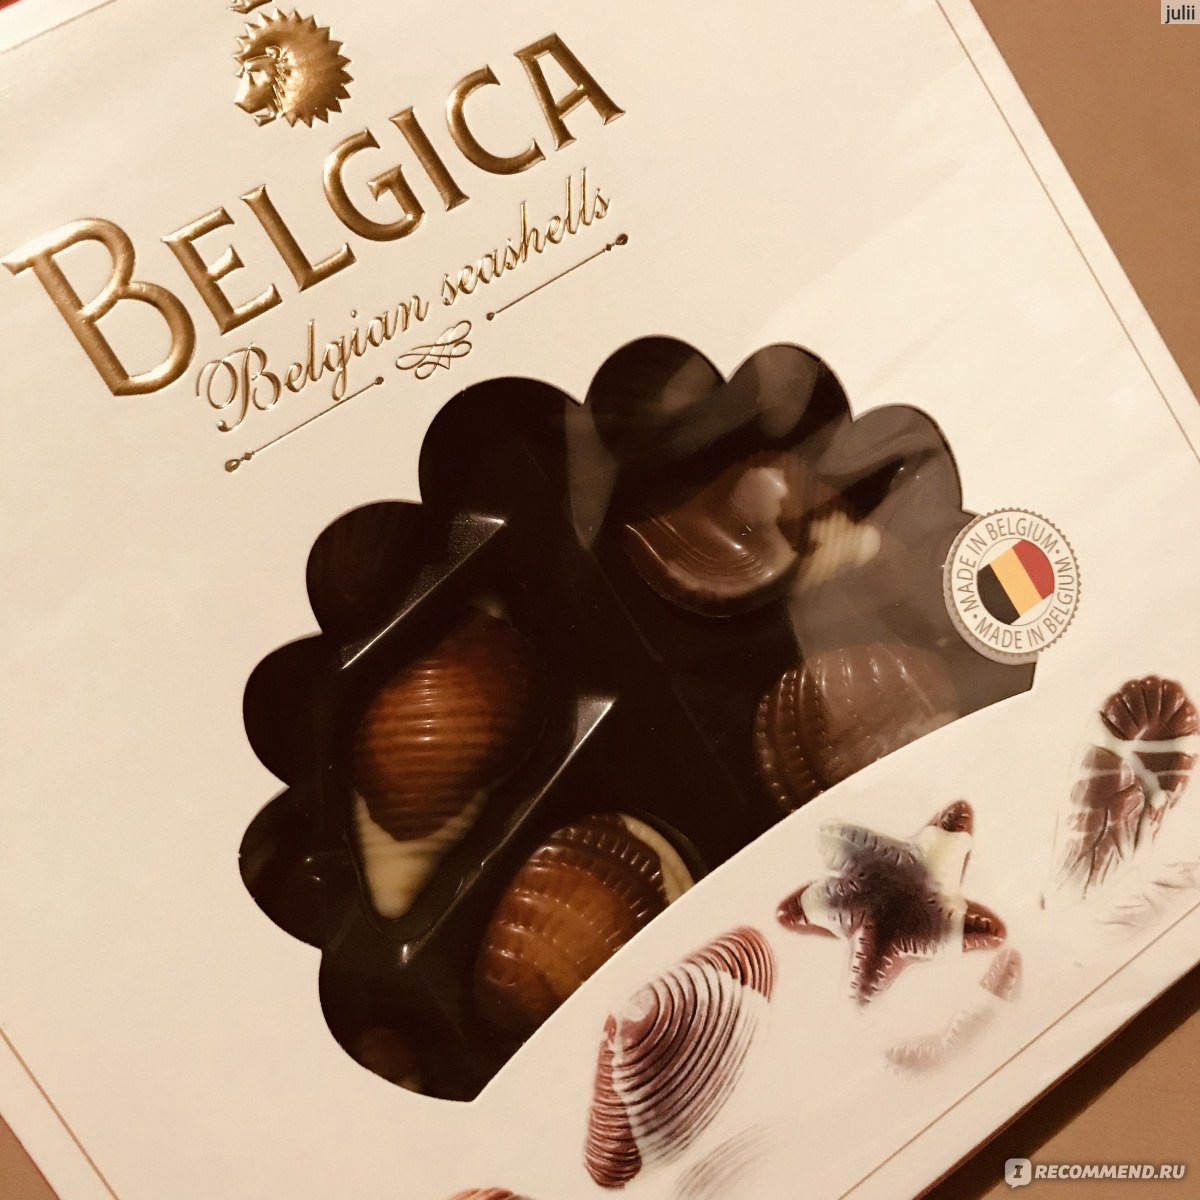 Шоколадные конфеты Chocolate Seashells, коробка с красным бантом, 250 гр.Belgian